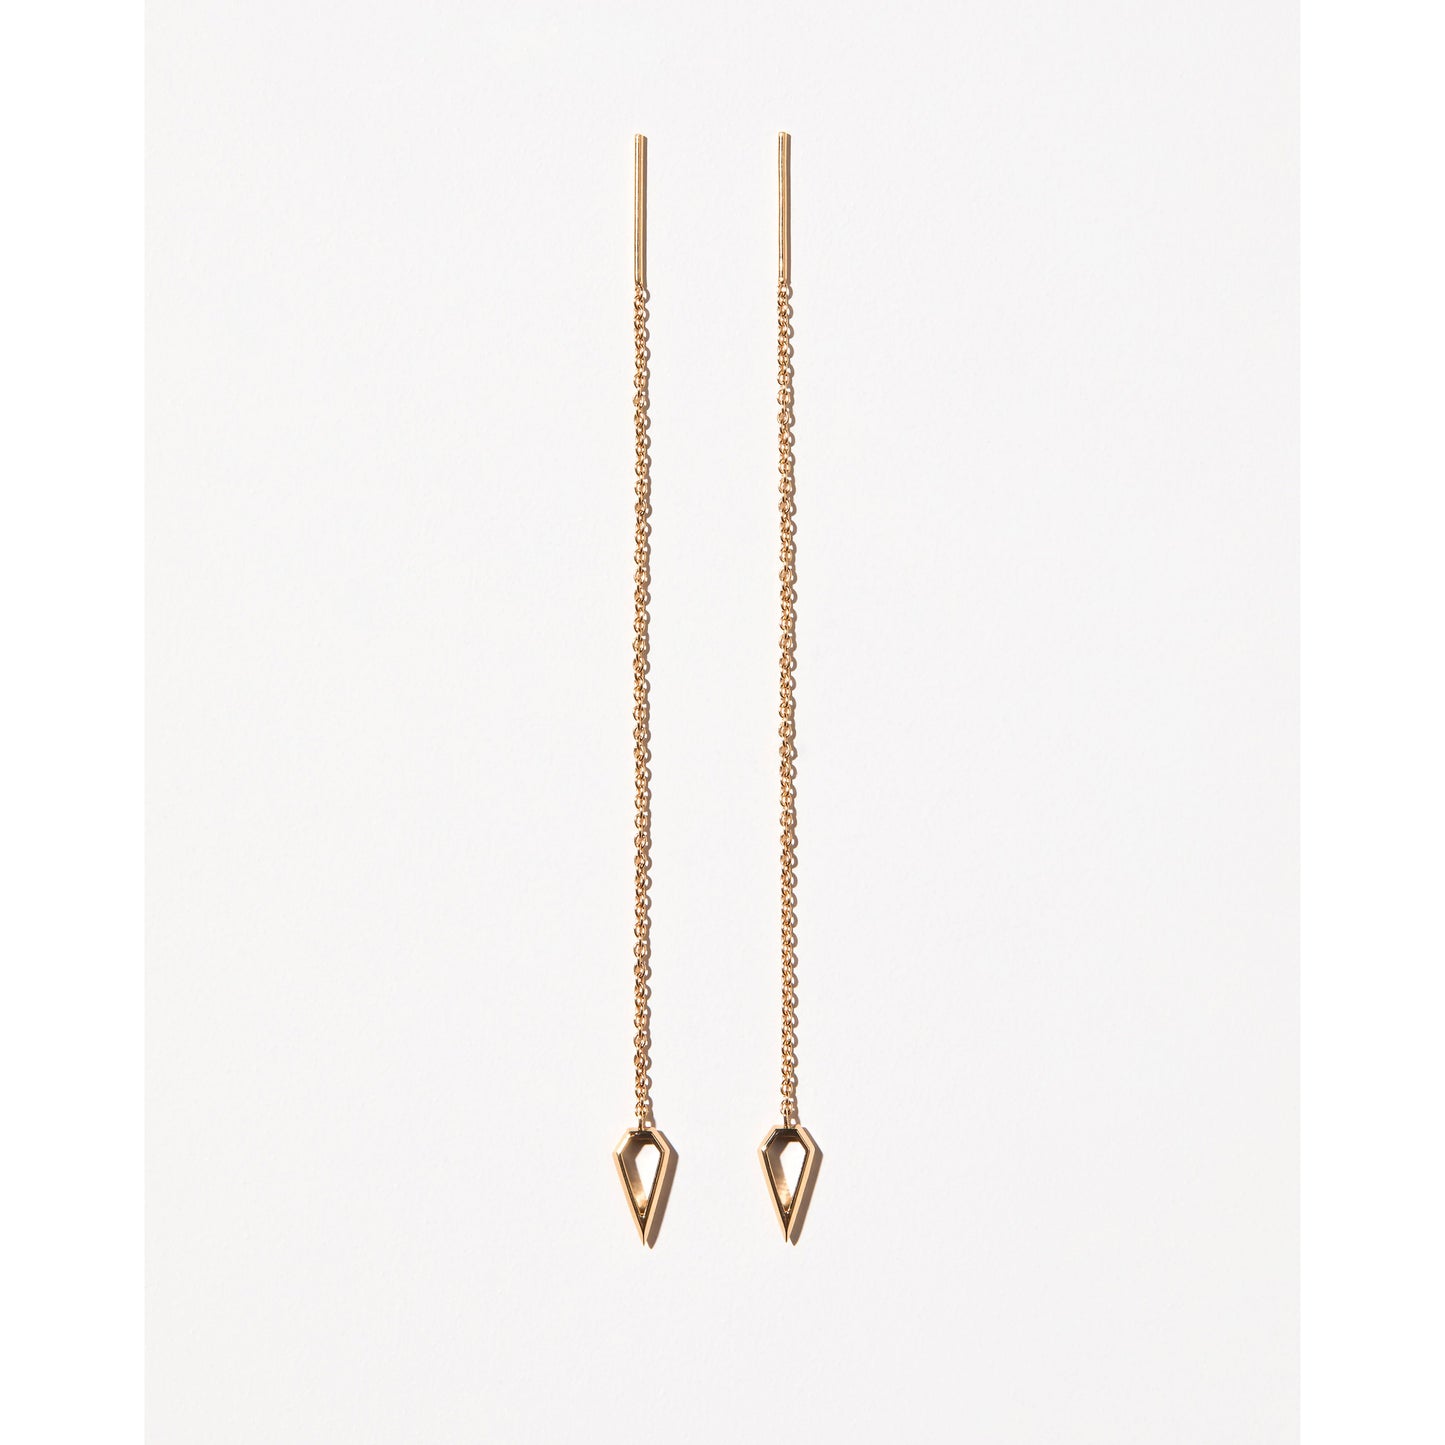 Spear Thread Earrings in Gold